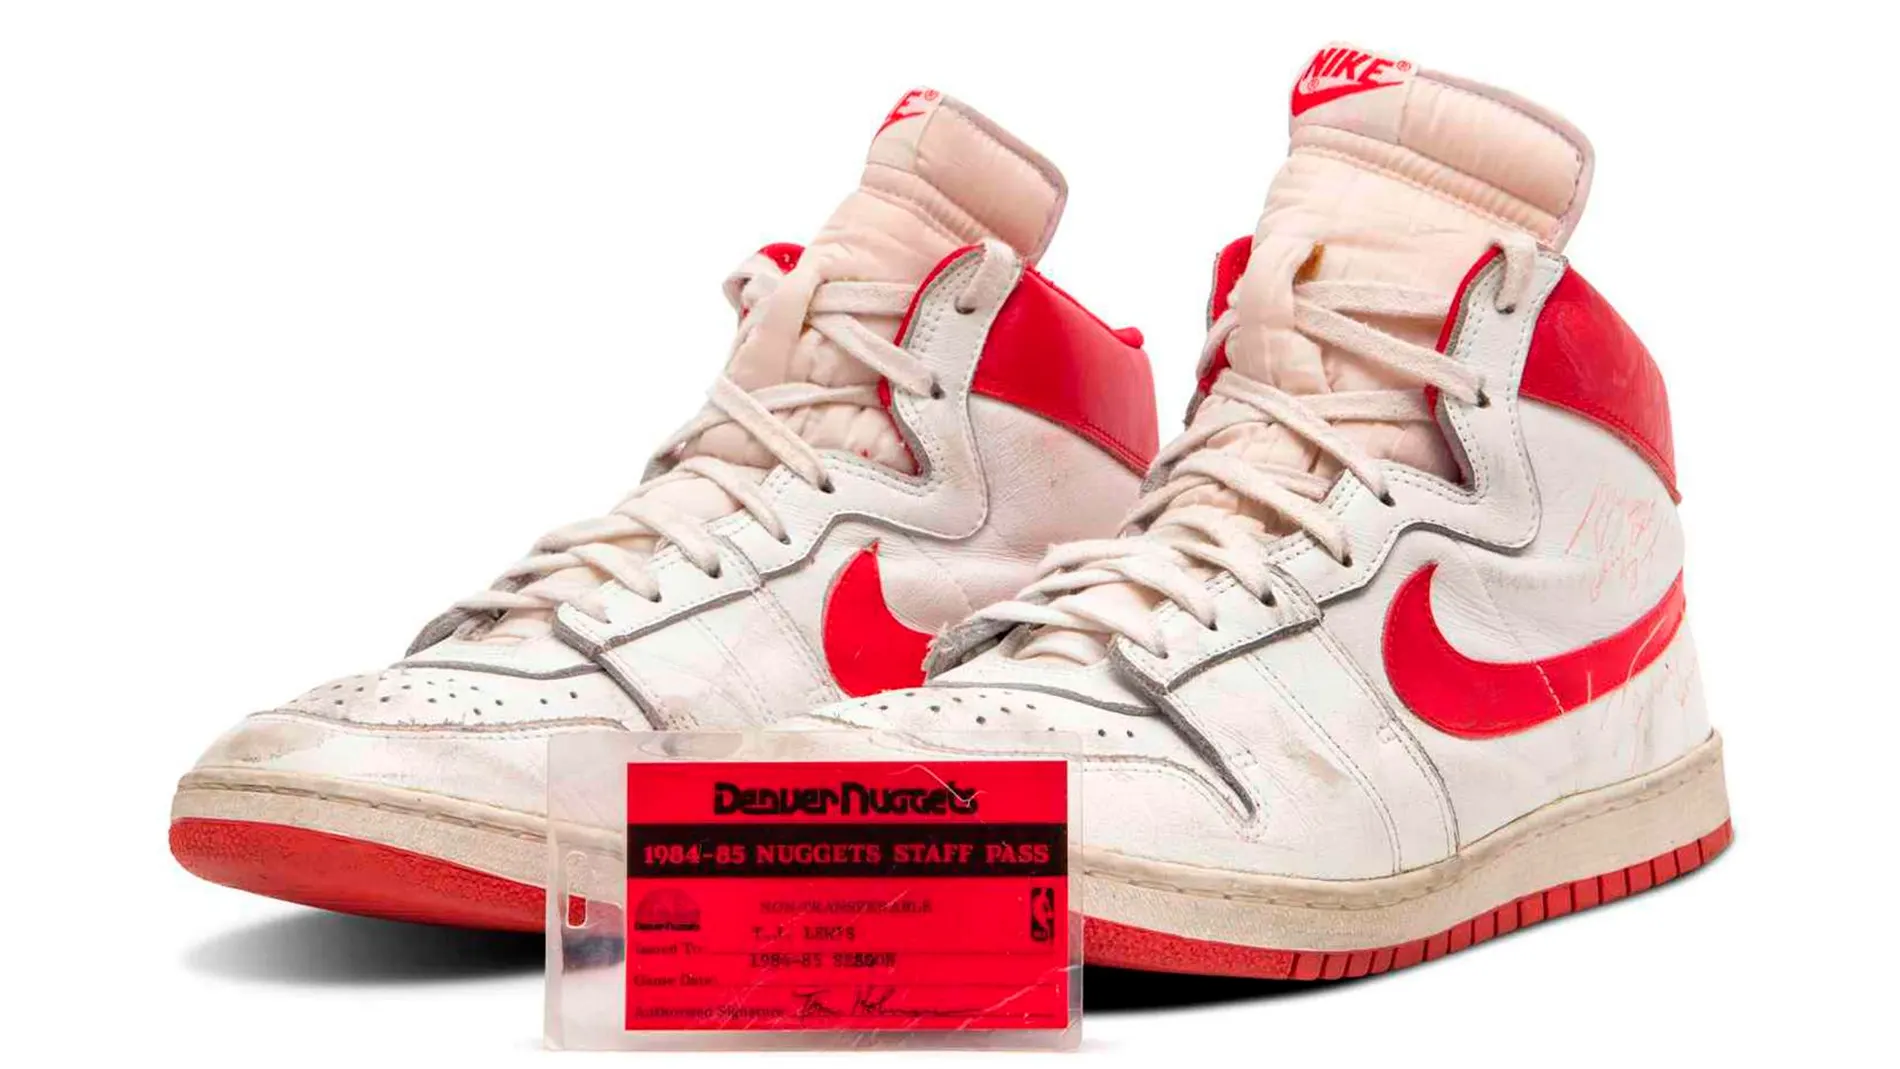 Se subastan zapatillas Michael Jordan usó en primera temporada en la NBA por 1,5 millones de dólares